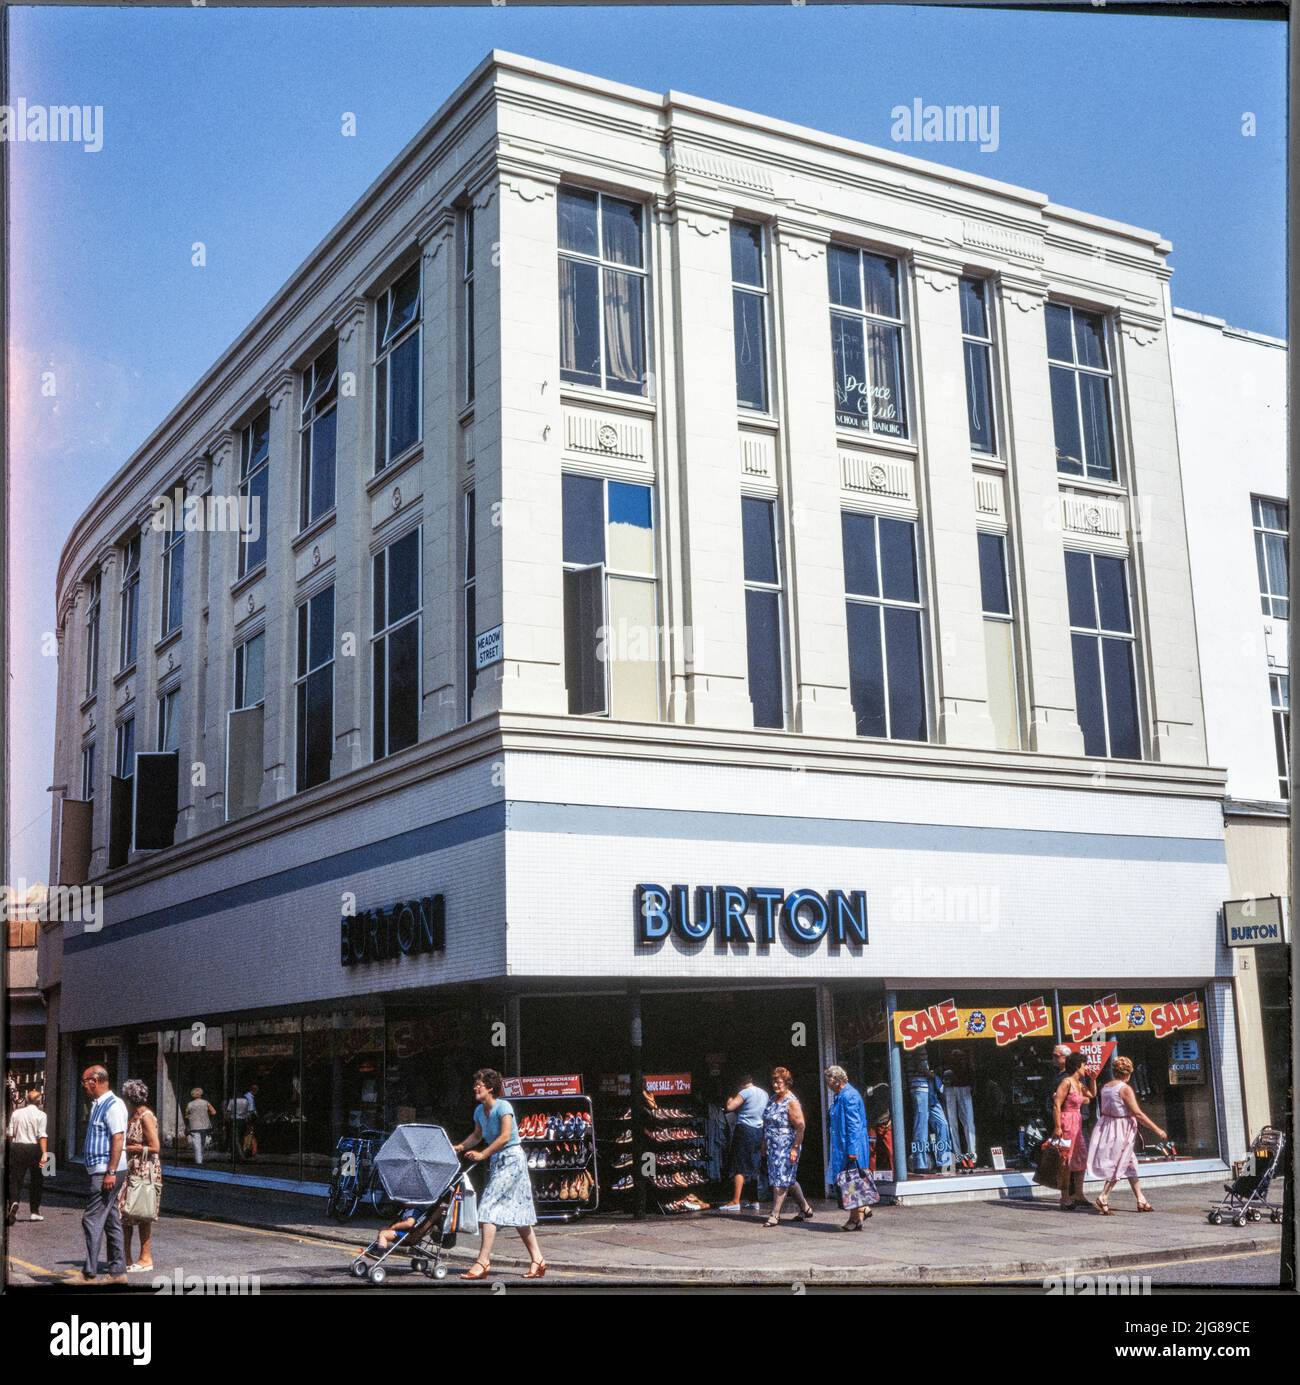 Burton, 159-161 commercial Road, Portsmouth, ville de Portsmouth, 1970s-1980s. Le magasin Burton à l'angle de commercial Road et Meadow Street, vu du sud avant la construction du centre commercial Cascades. Meadow Street a été réaménagé dans le cadre du centre commercial Cascades, probablement à la fin de 1980s. Le magasin Burton du 159-161 commercial Road est resté, bien que de nombreuses fenêtres de la façade de Meadow Street aient été bloquées. Banque D'Images